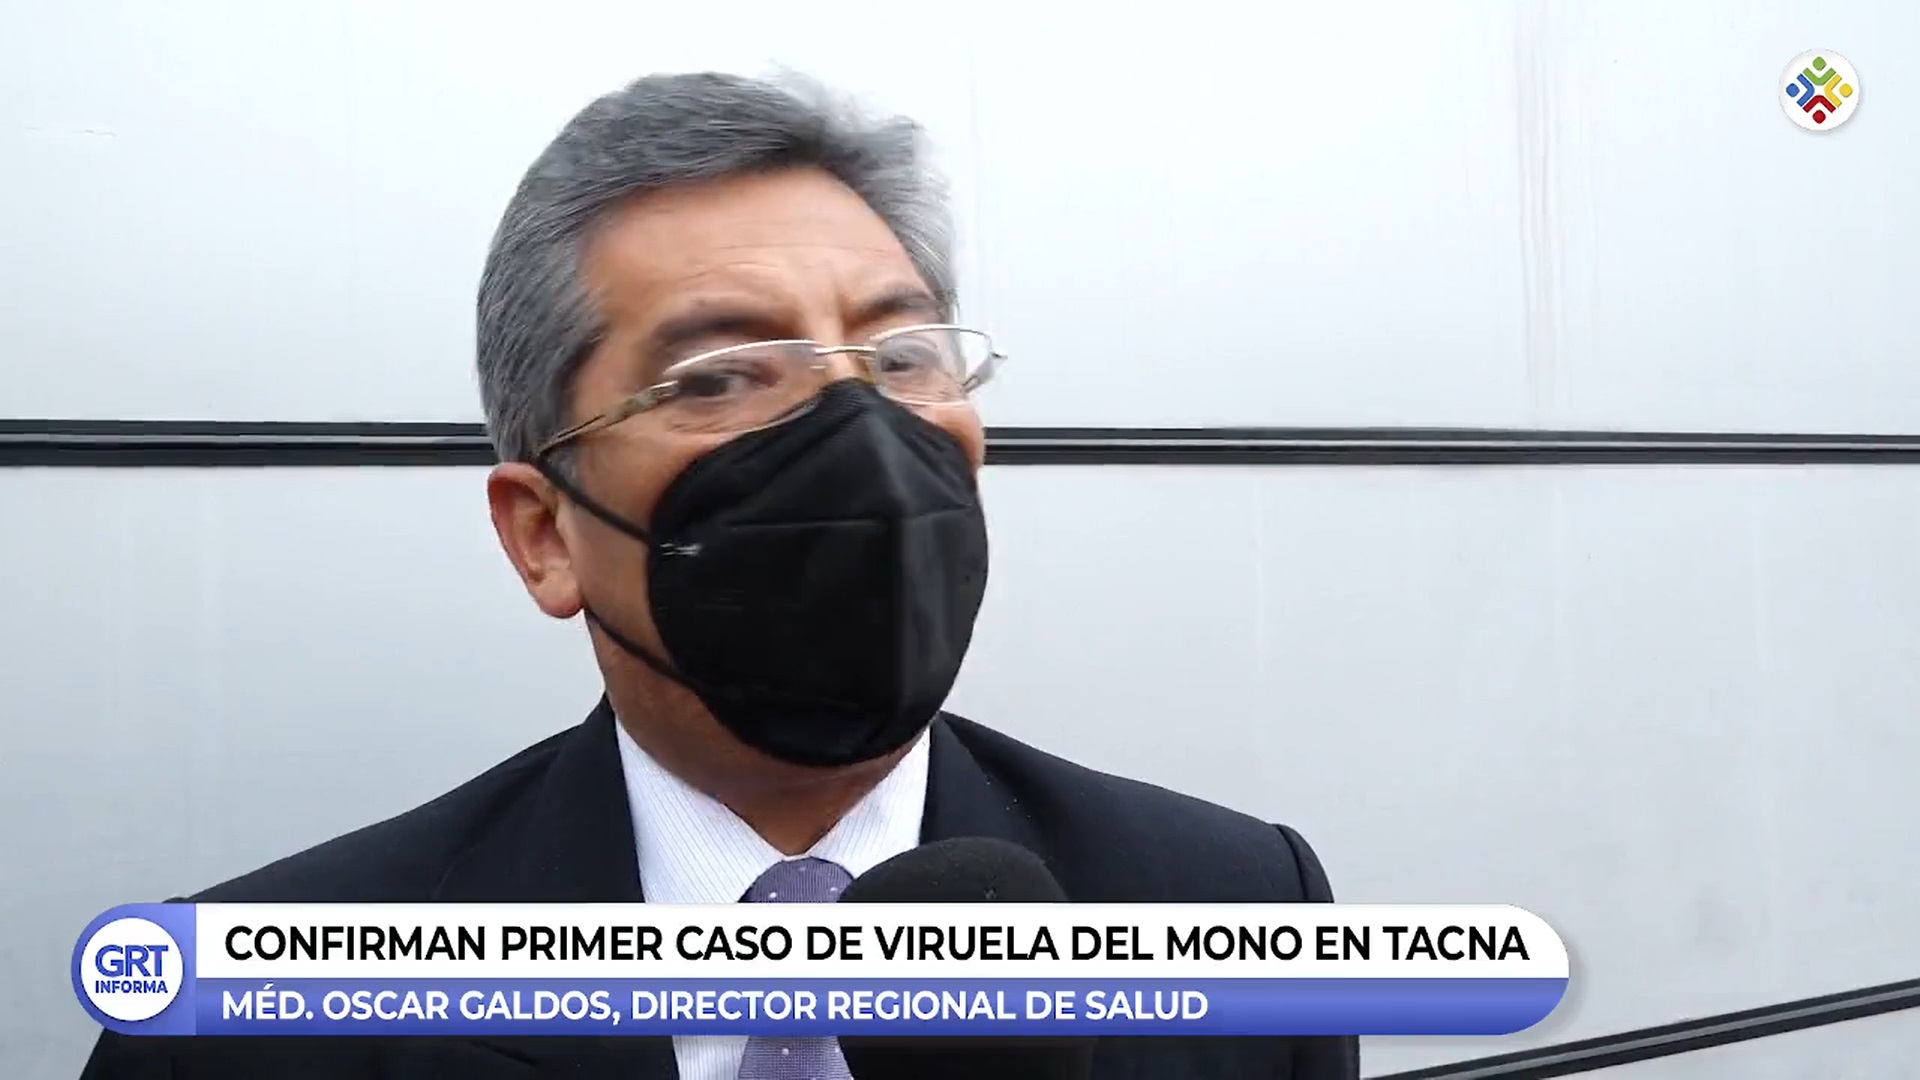 Confirman el primer caso de viruela del mono en la región Tacna